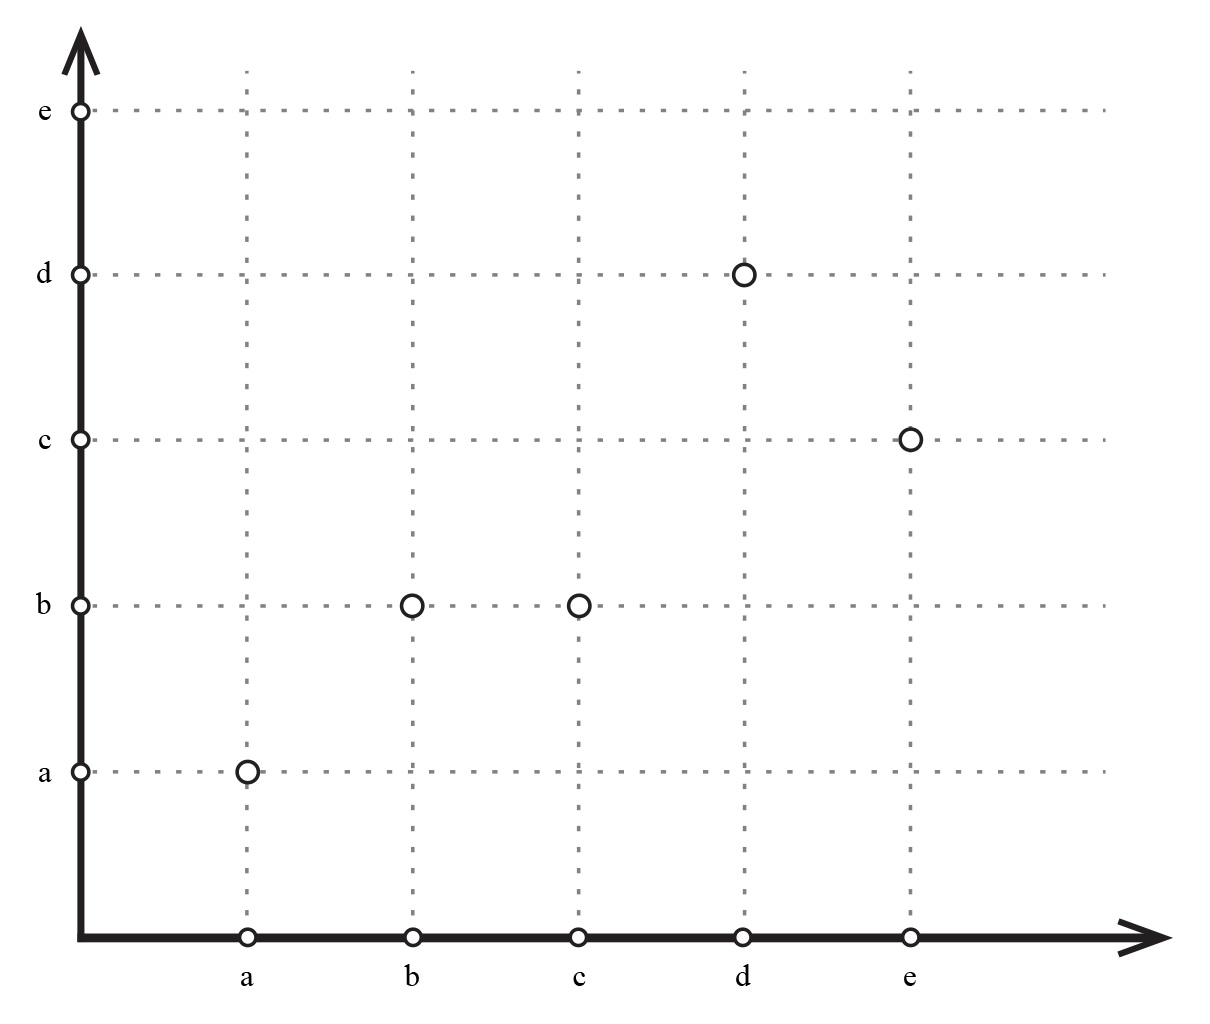 Slika prikazuje graf, treba odrediti je li to graf funkcije.